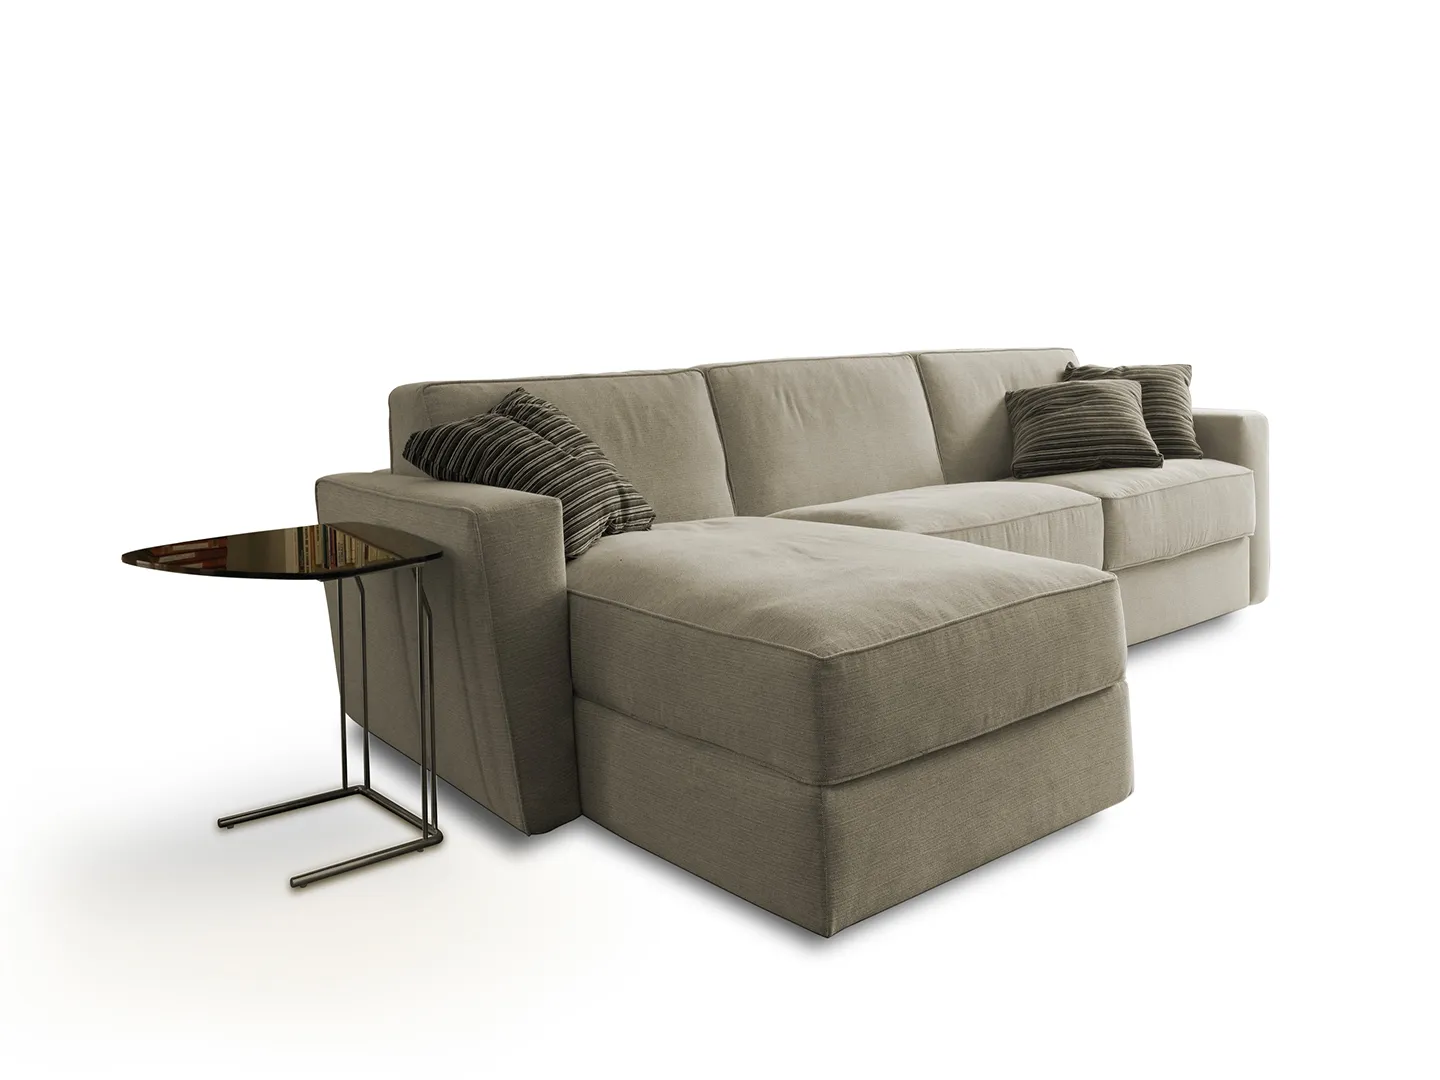 Milano Bedding - Shorter modular sofa bed